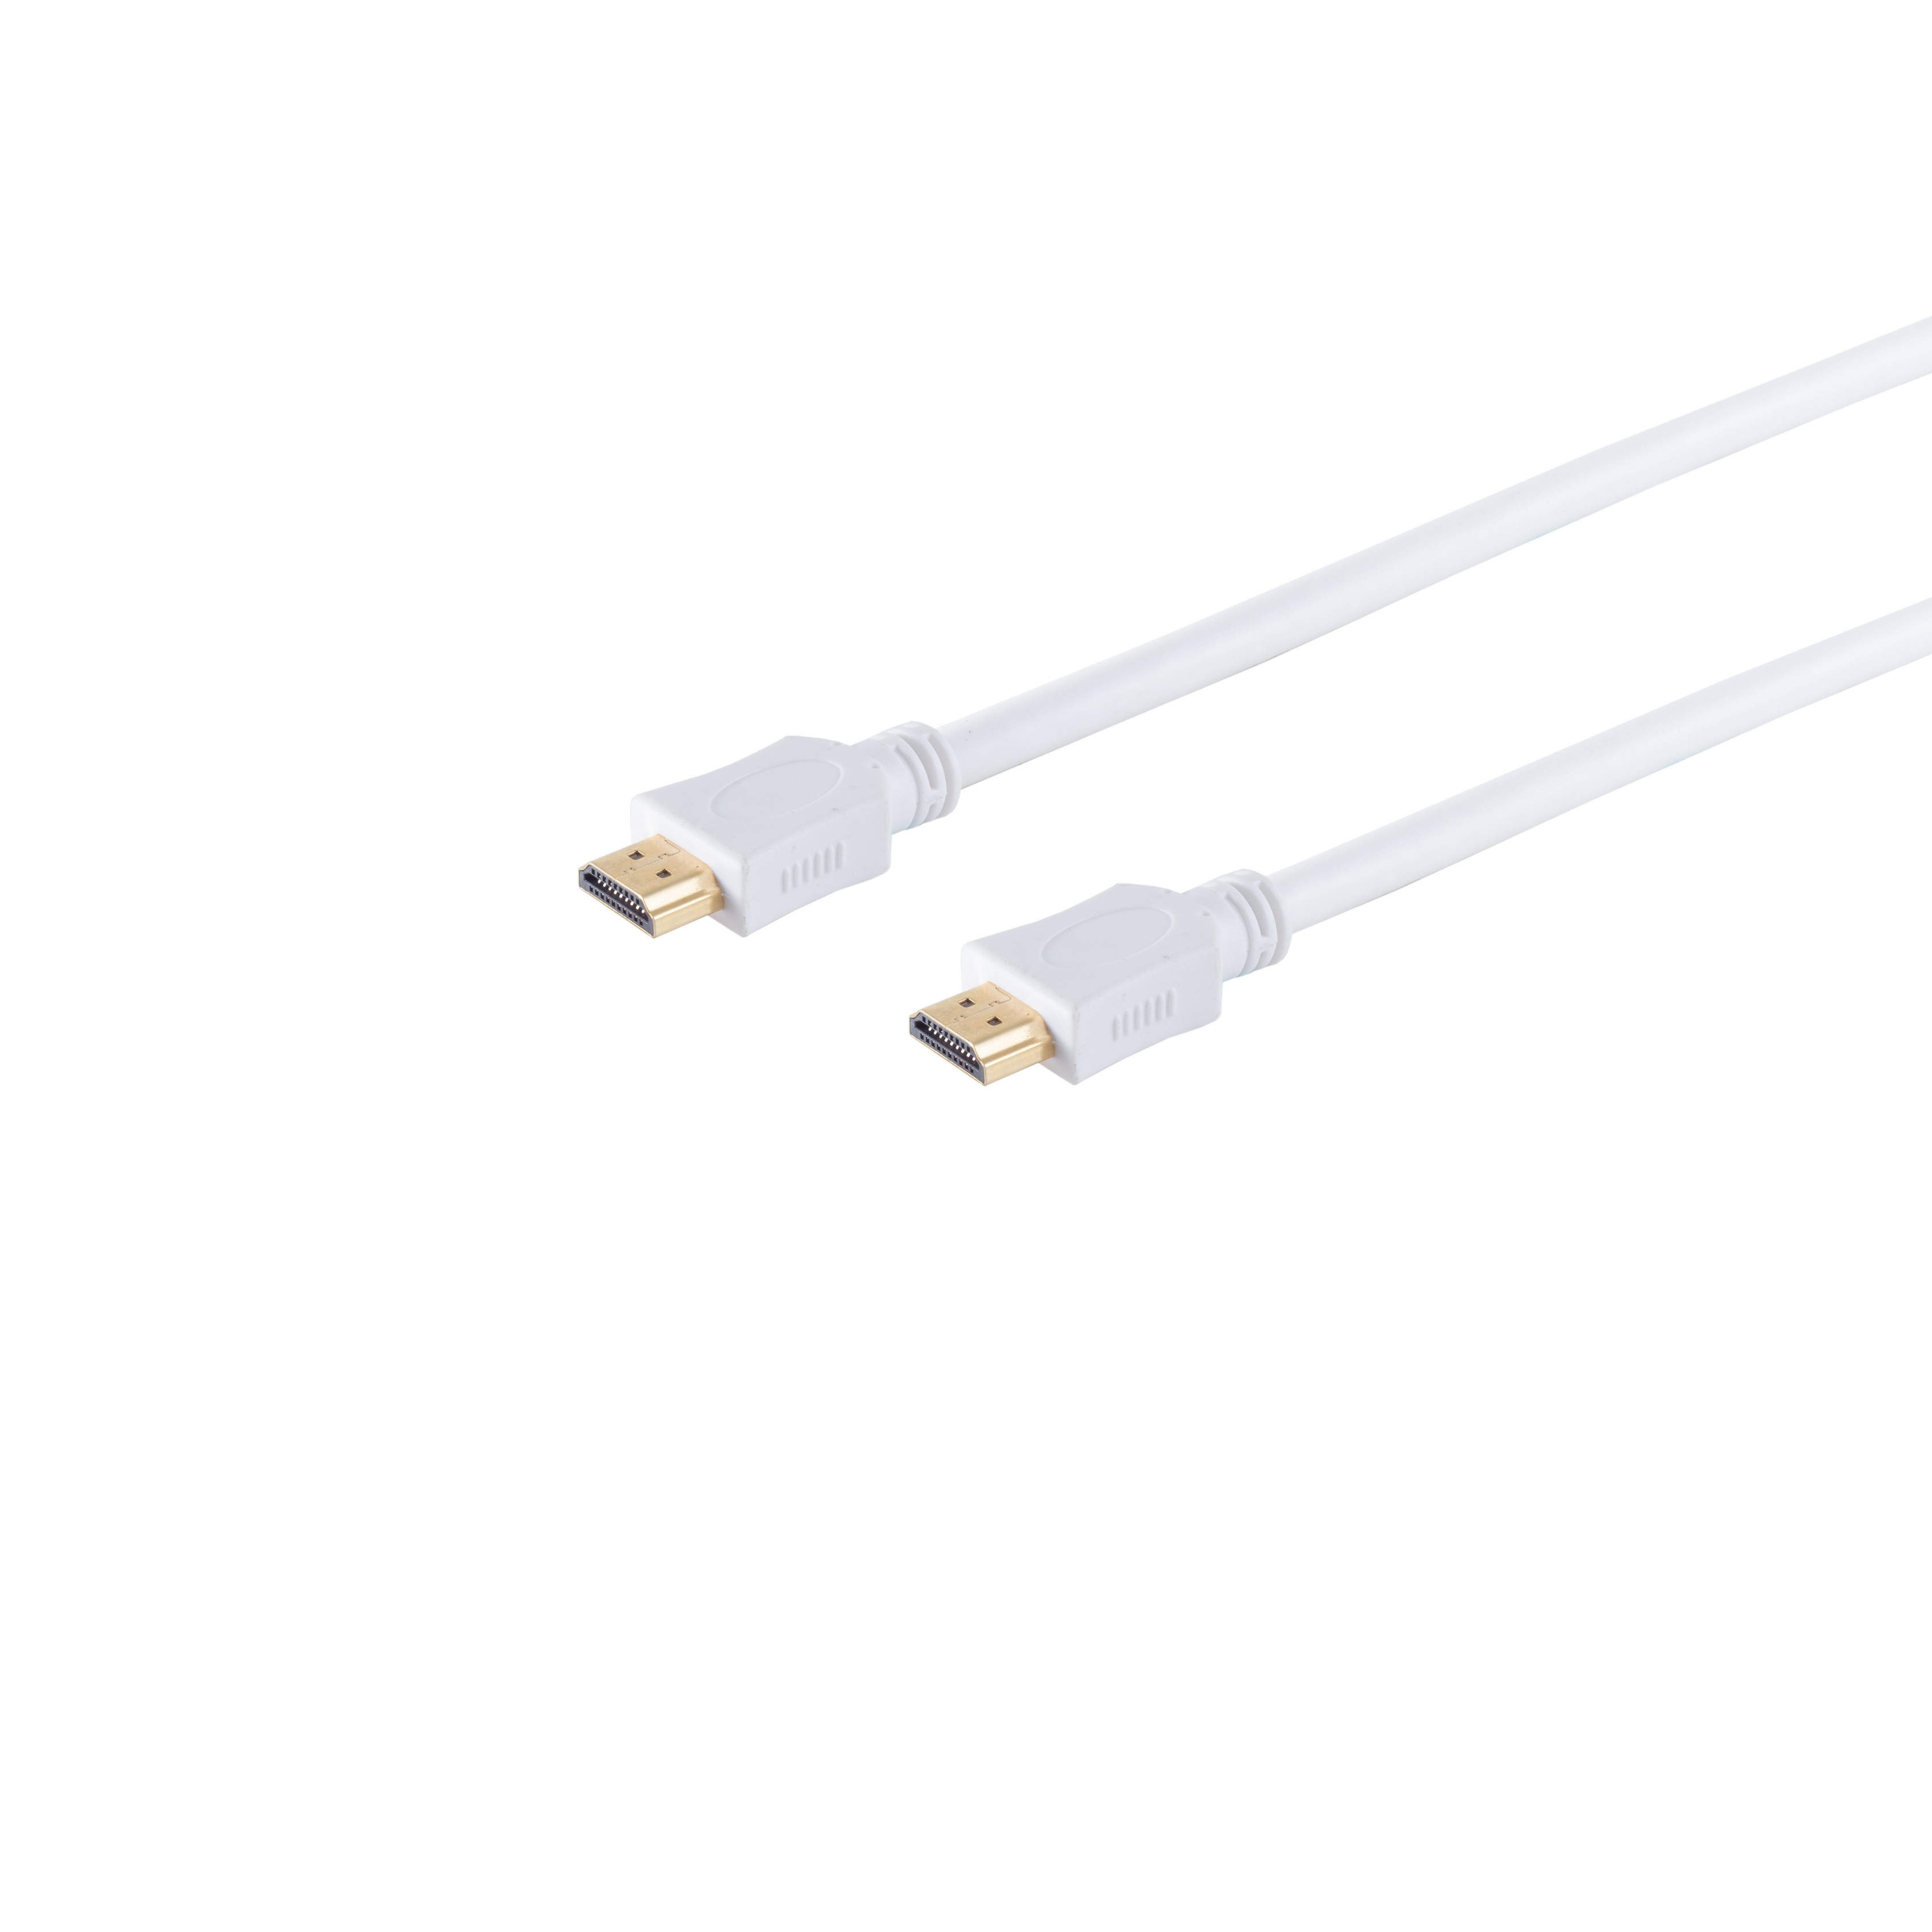 Kabel S/CONN HDMI 7,5m weiß HEAC verg. MAXIMUM HDMI A-Stecker CONNECTIVITY A-Stecker/HDMI